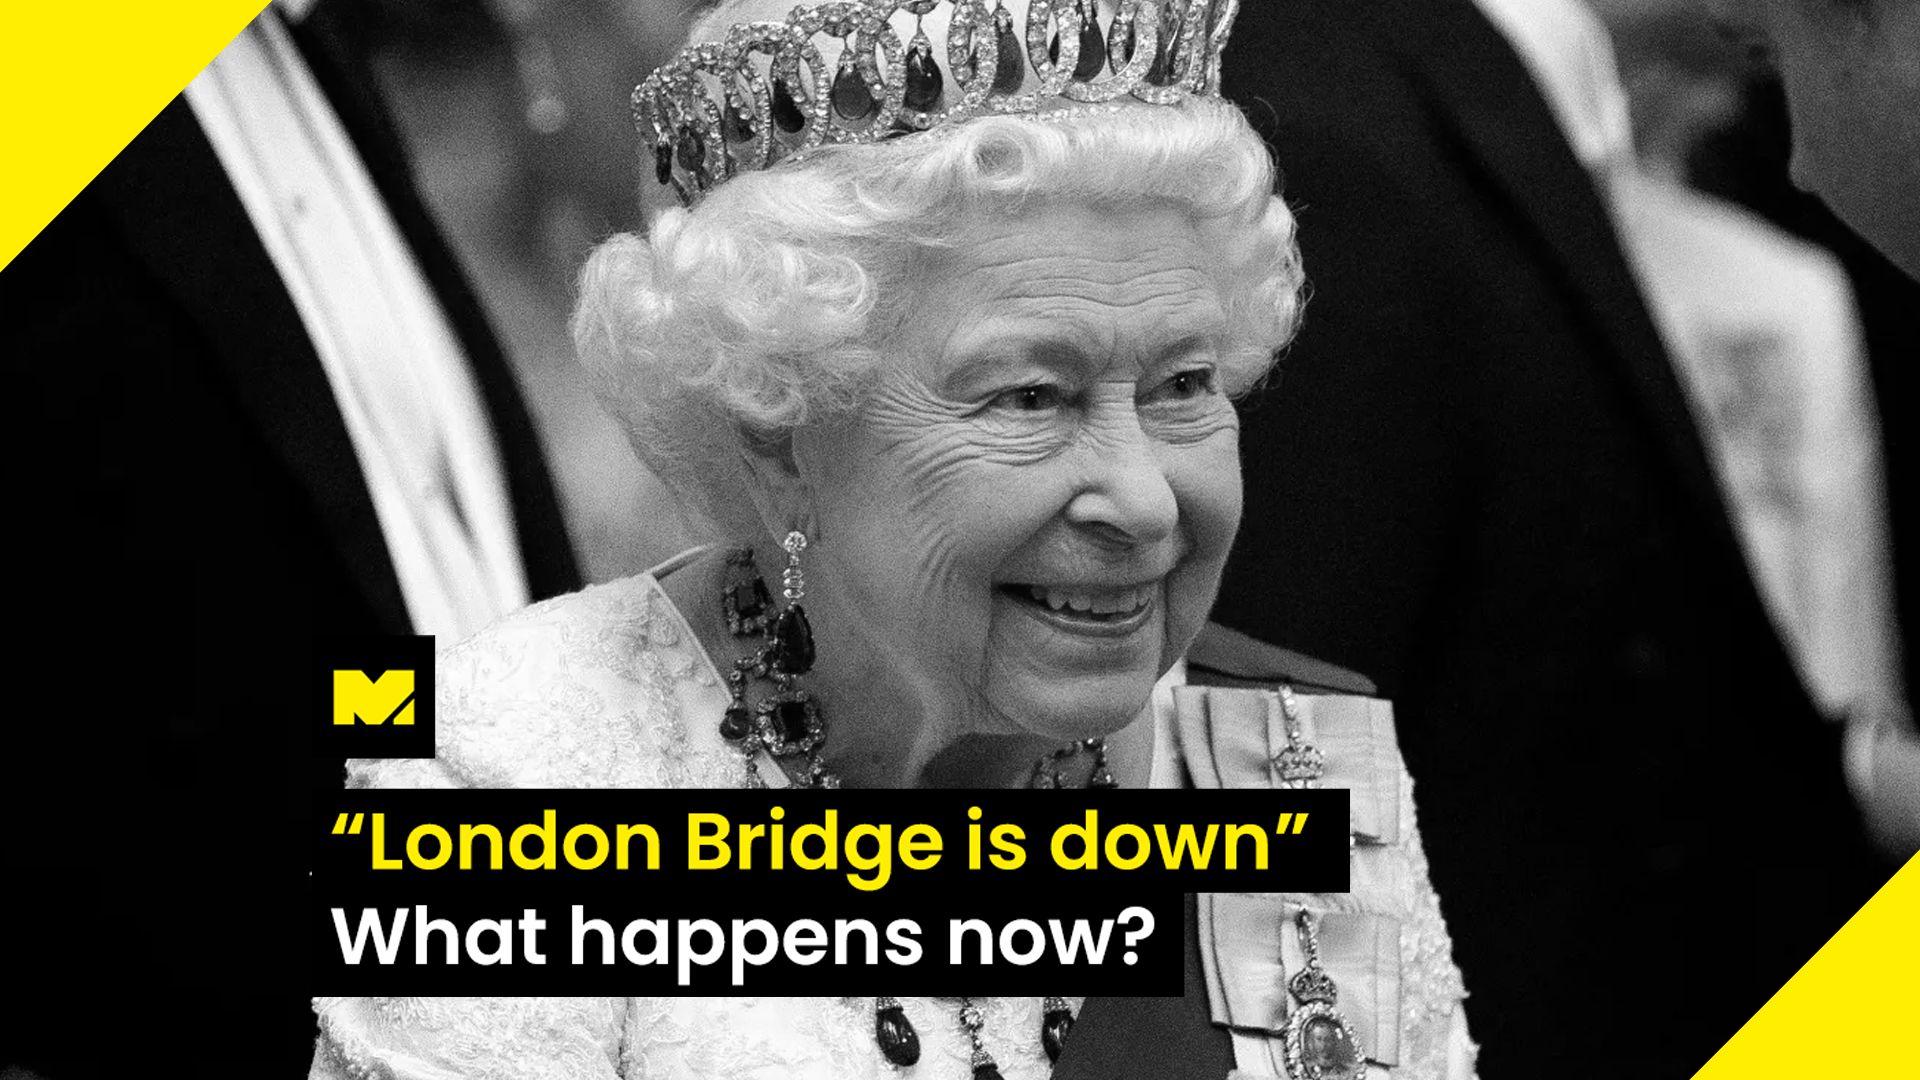 "London Bridge is down" - What happens now?